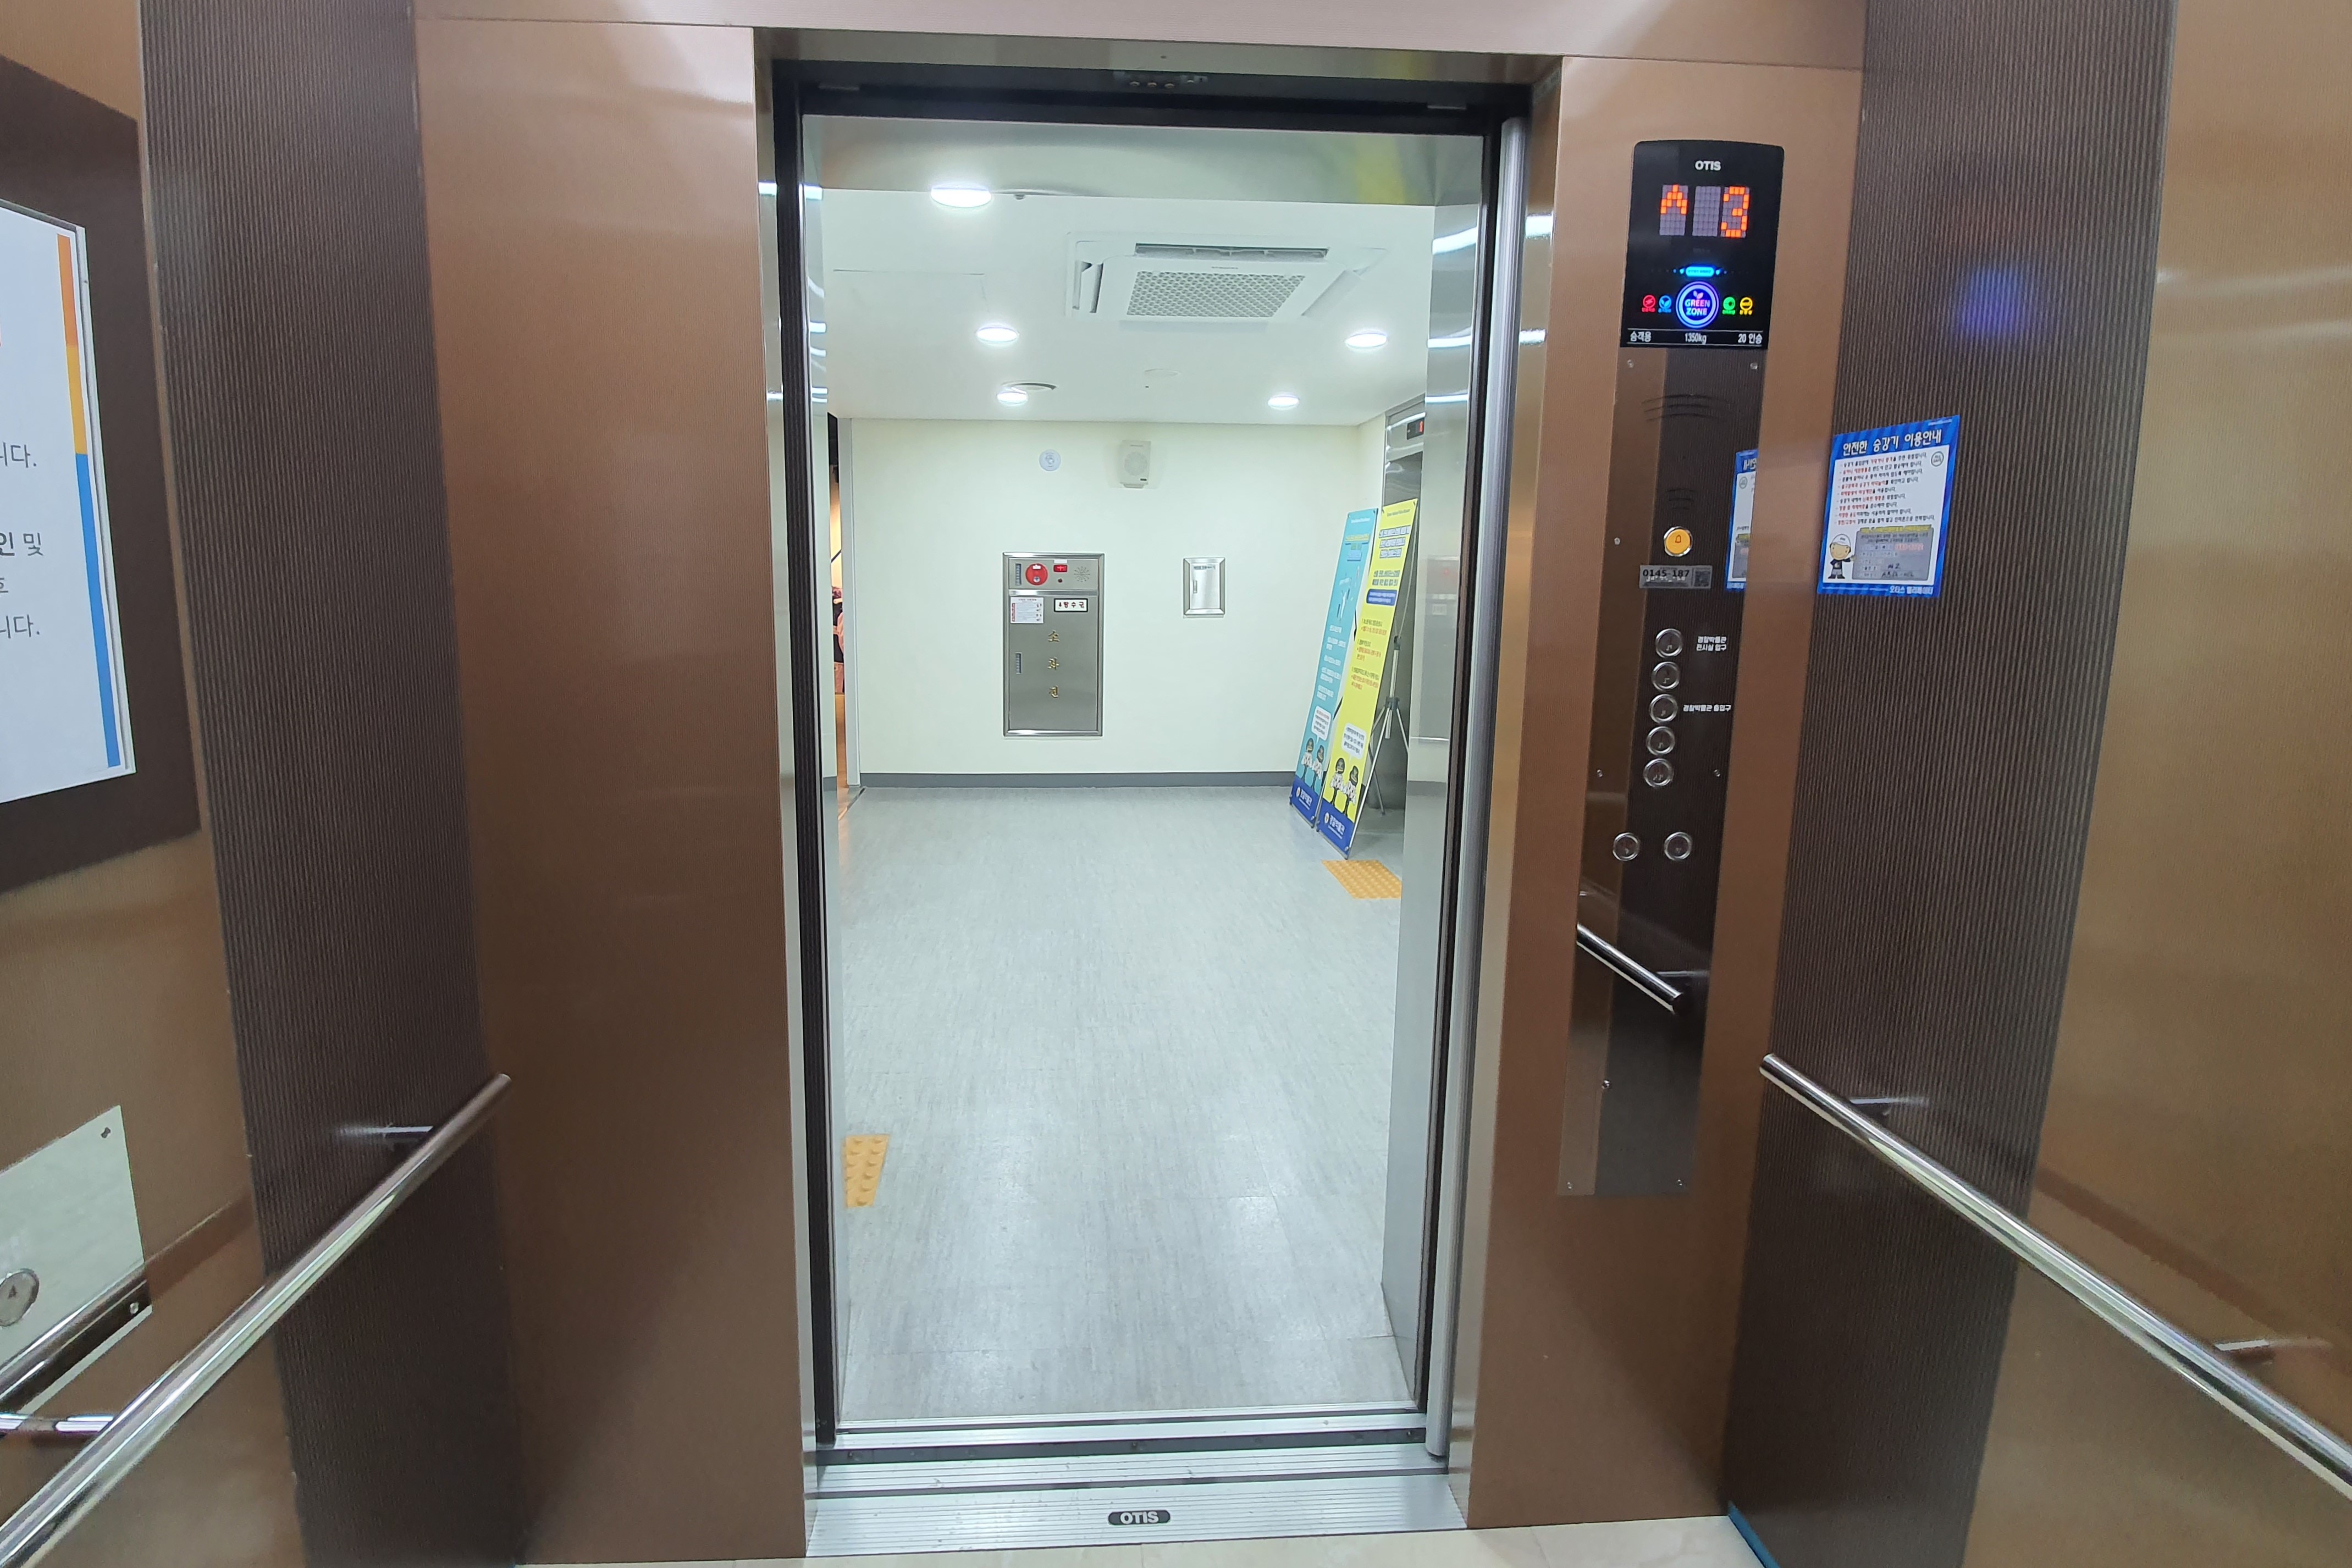 엘리베이터0 : 넓은 공간의 경찰박물관 엘리베이터 내부 전경